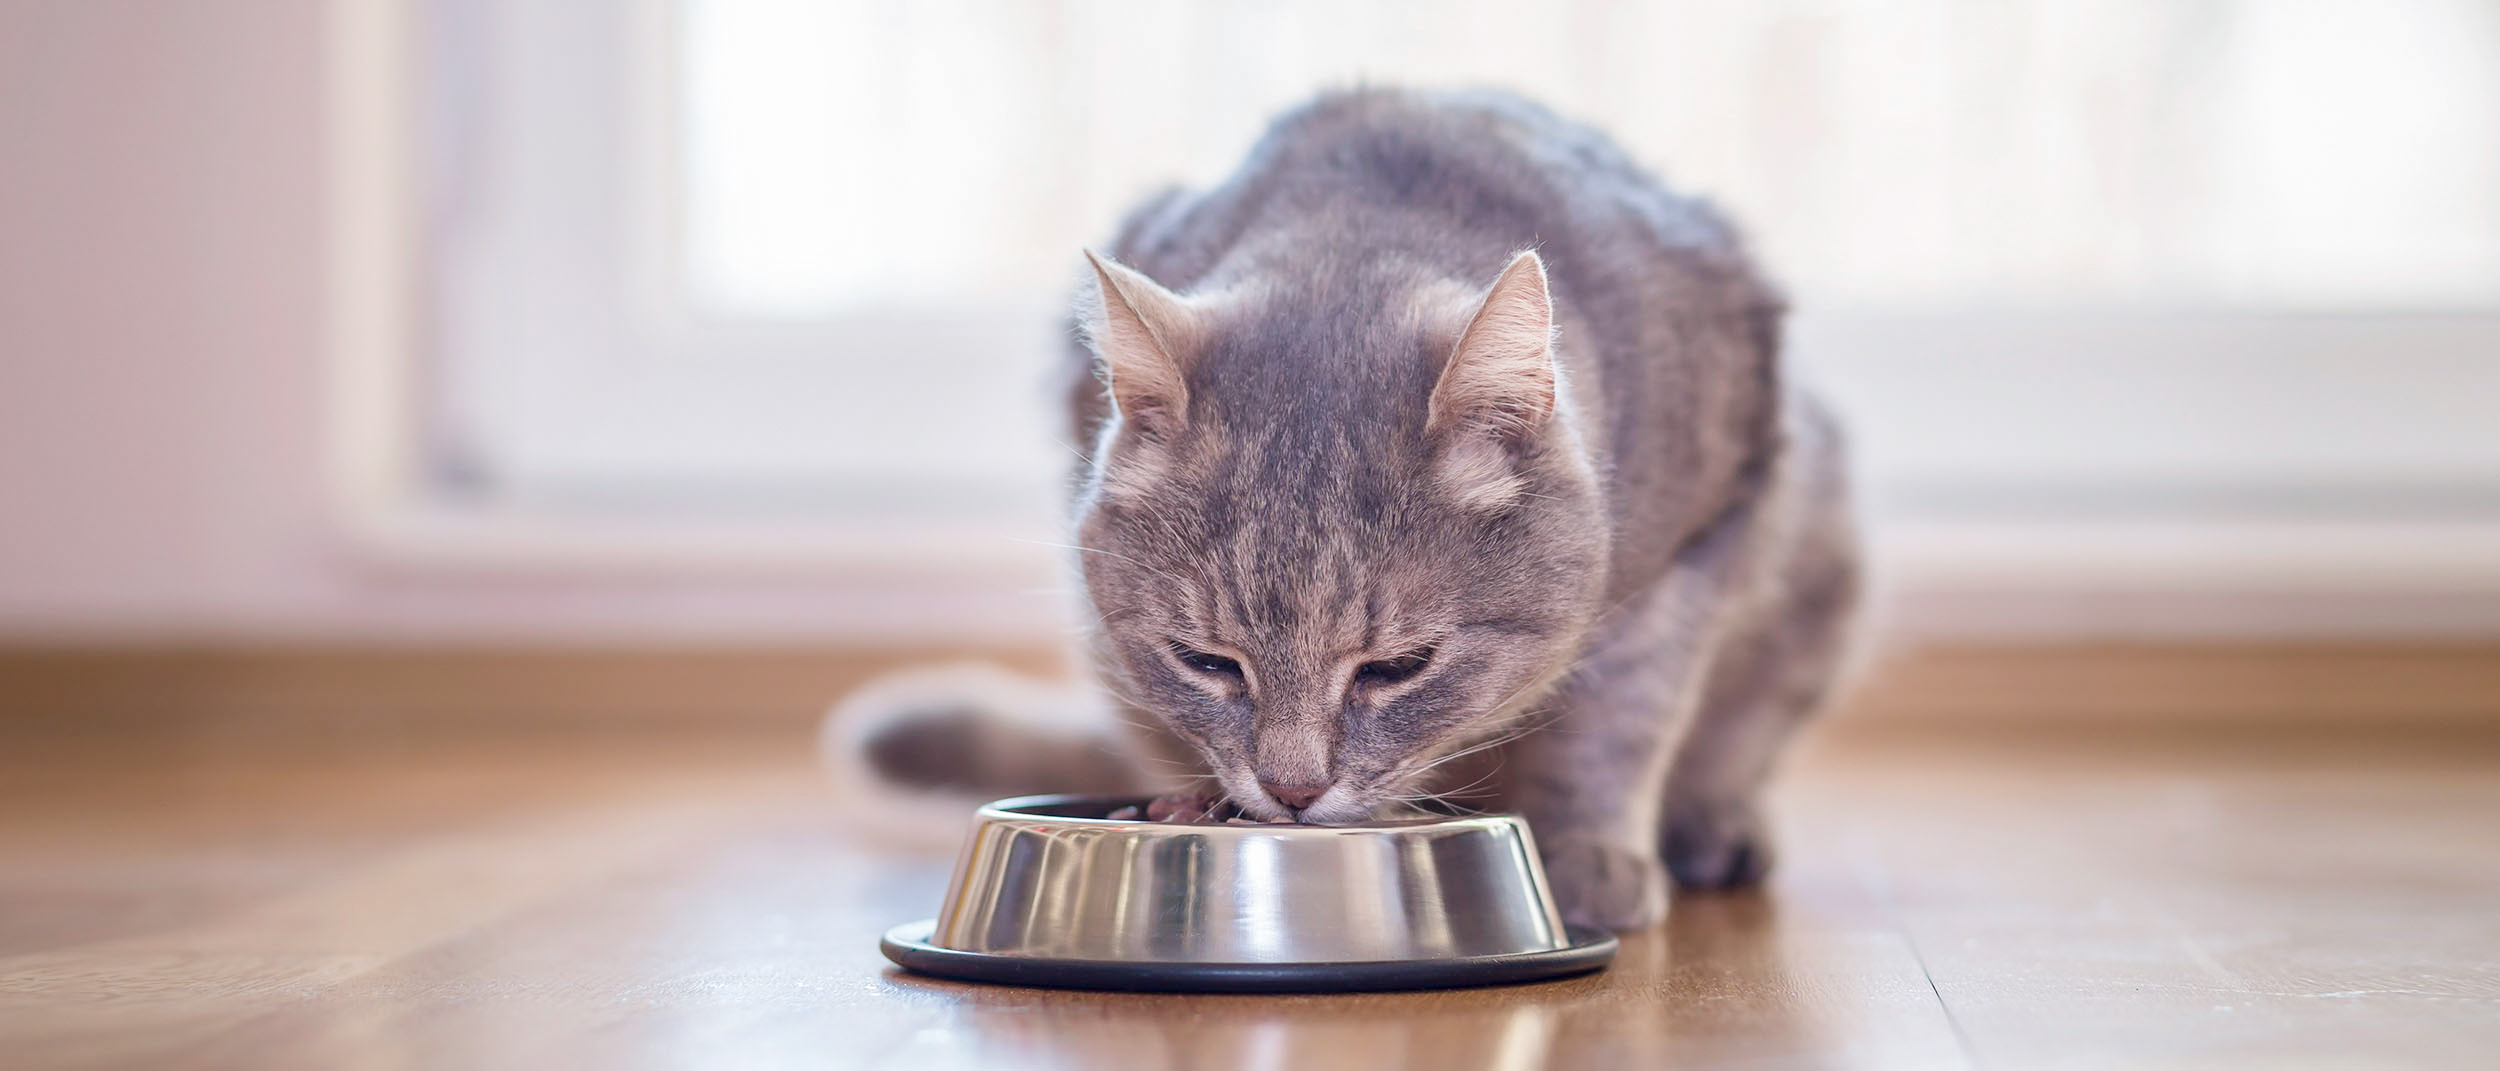 Gato adulto sentado en el interior comiendo de un cuenco de plata.